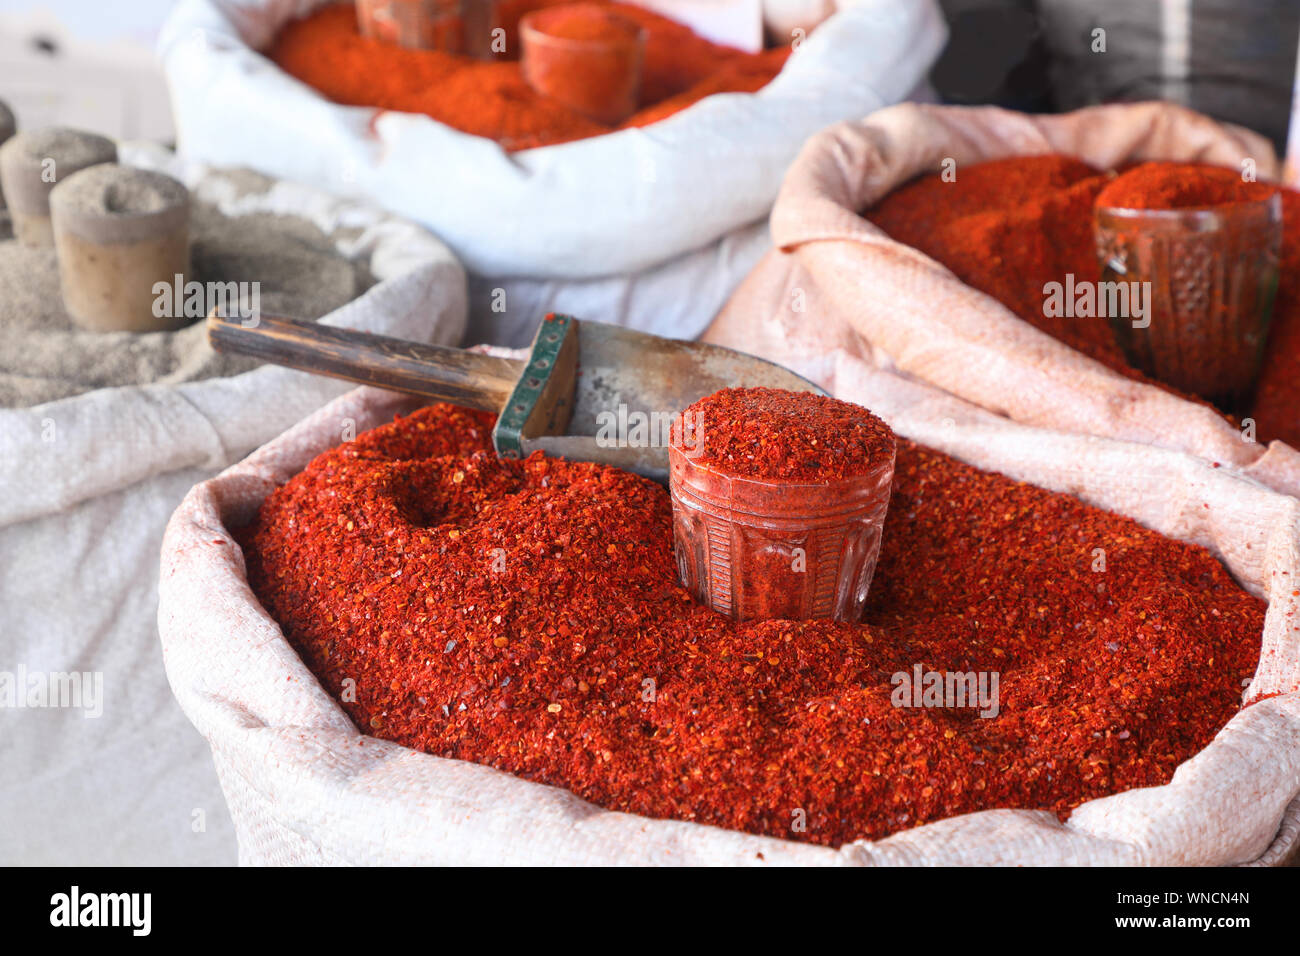 Épice odorante - masse red hot pepper . dans le marché dans un grand sac. Banque D'Images